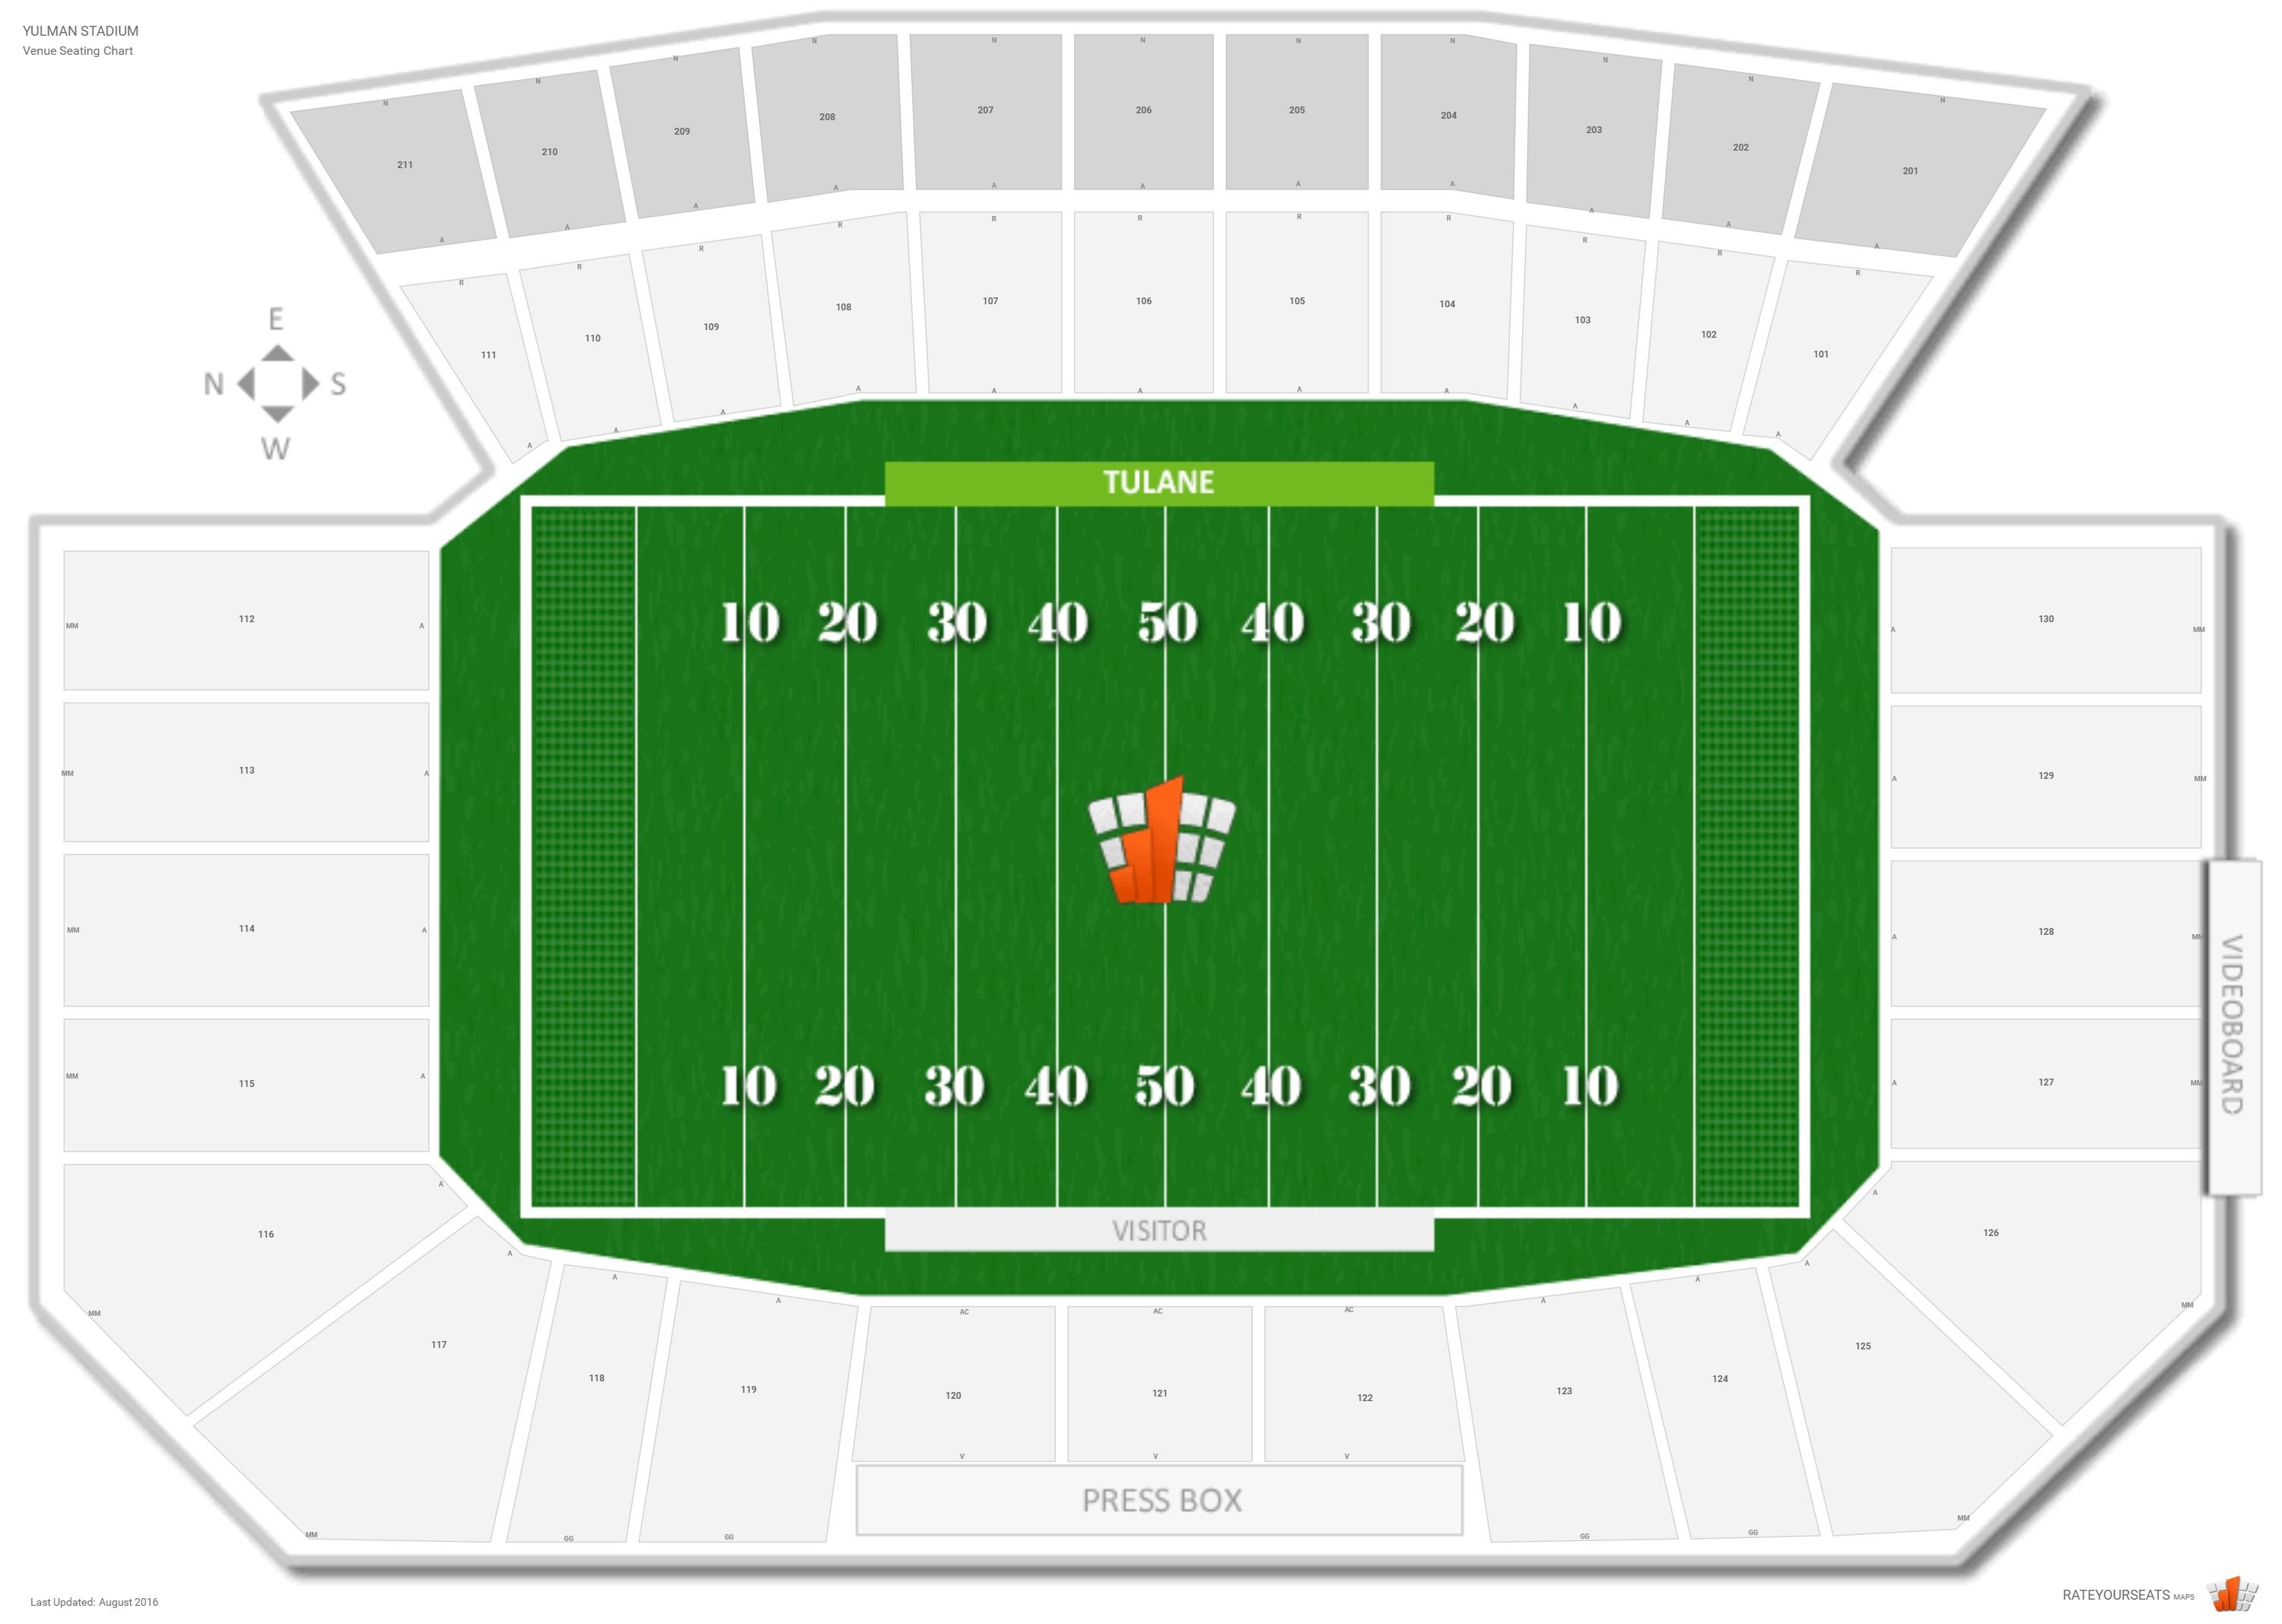 Tulane Stadium Seating Chart